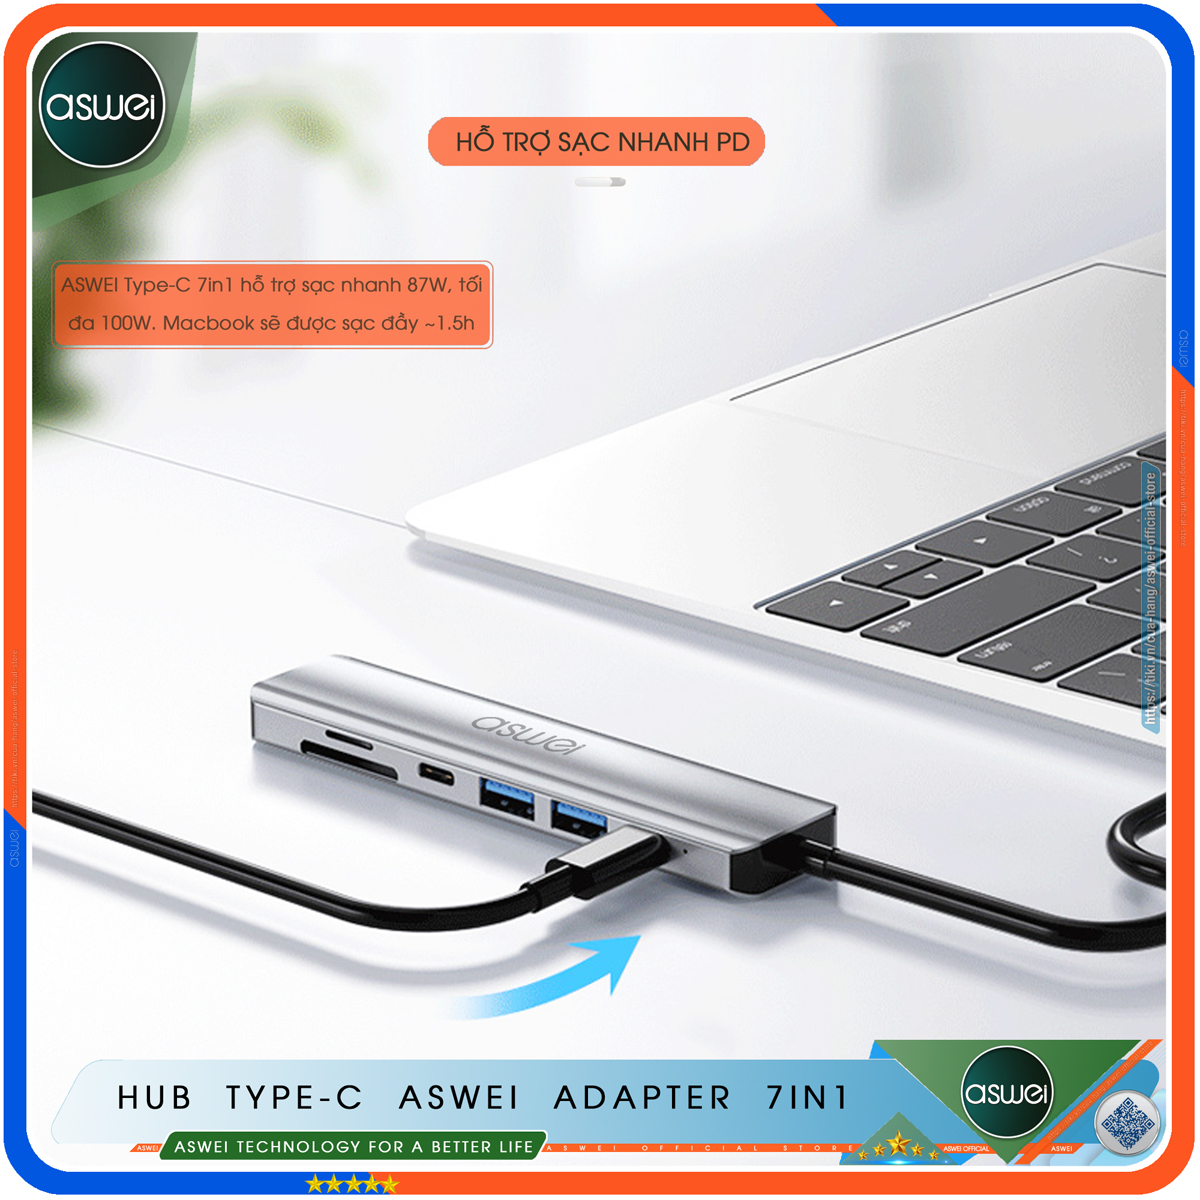 Hub Type C ASWEI 7 in 1 To HDMI, USB 3.0, SD, TF, USB C, PD - Cổng Chia USB, Ổ Chia USB Tốc Độ Cao - Hub Chuyển Đổi USB Type C 7 Cổng Dành Cho Macbook, Laptop, PC, Máy Tính Bảng, Điện Thoại - Hàng Chính Hãng